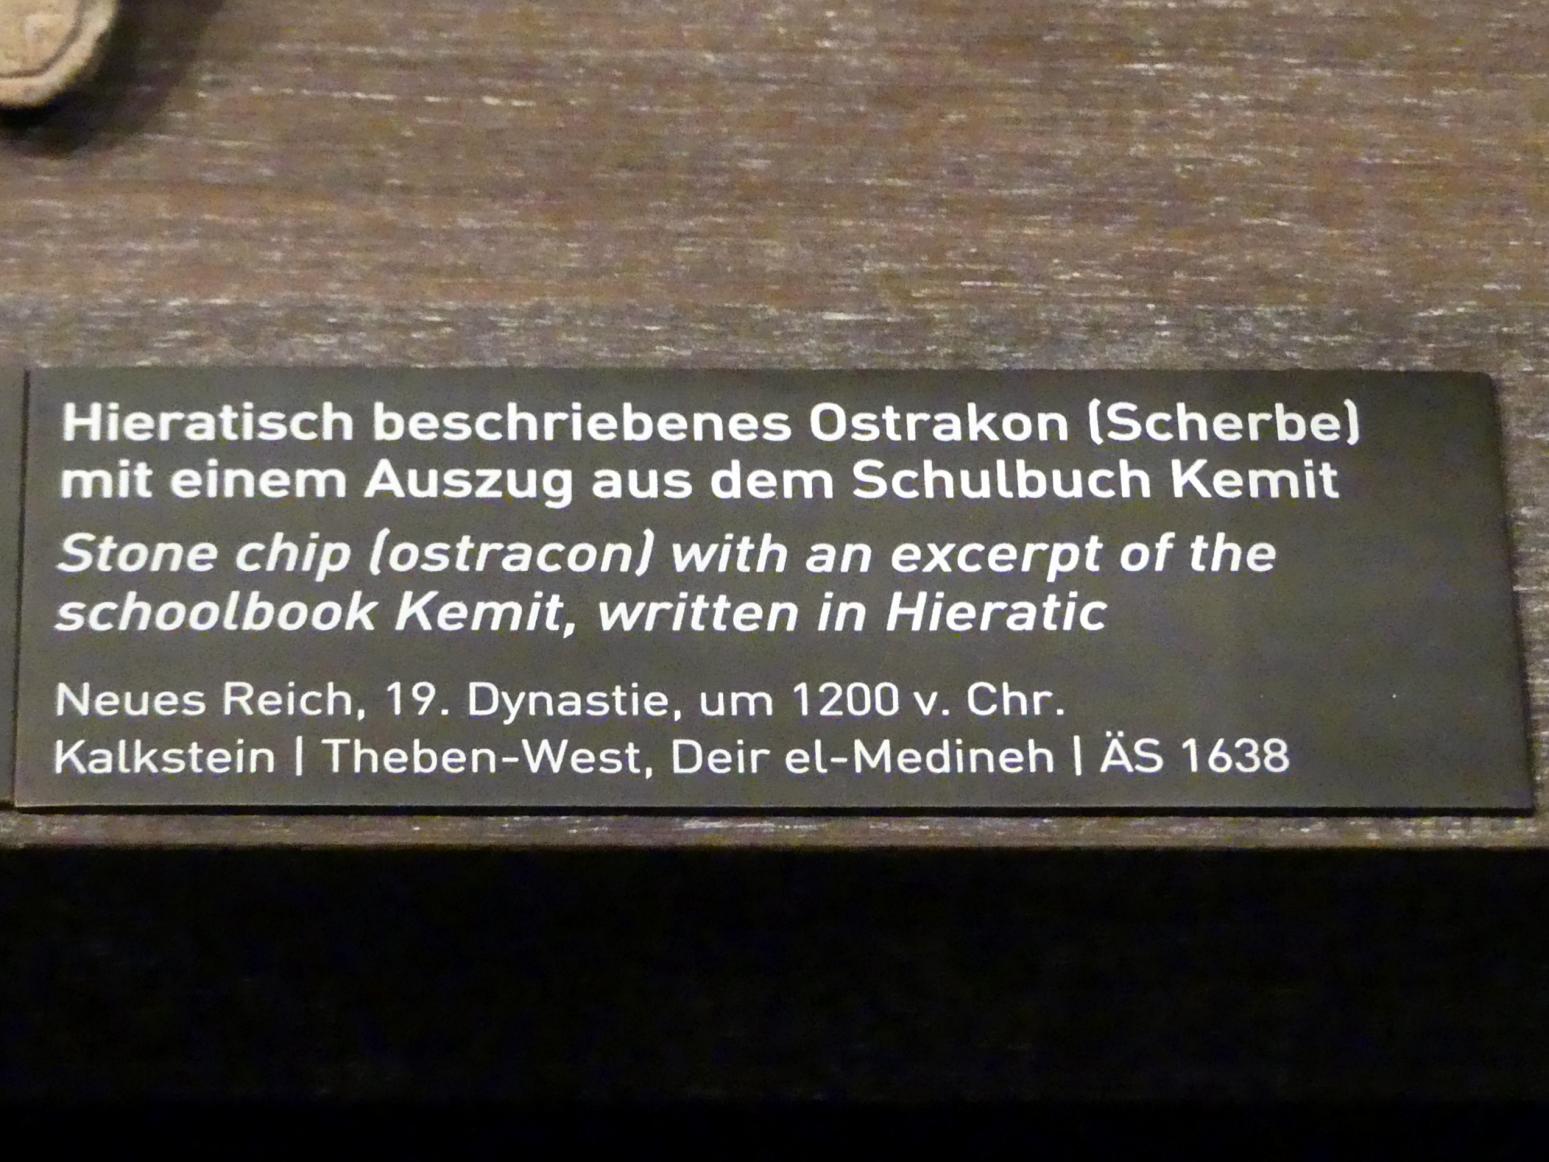 Hieratisch beschriebenes Ostrakon (Scherbe) mit einem Auszug aus dem Schulbuch Kemit, 19. Dynastie, 953 - 887 v. Chr., 1200 v. Chr., Bild 2/2